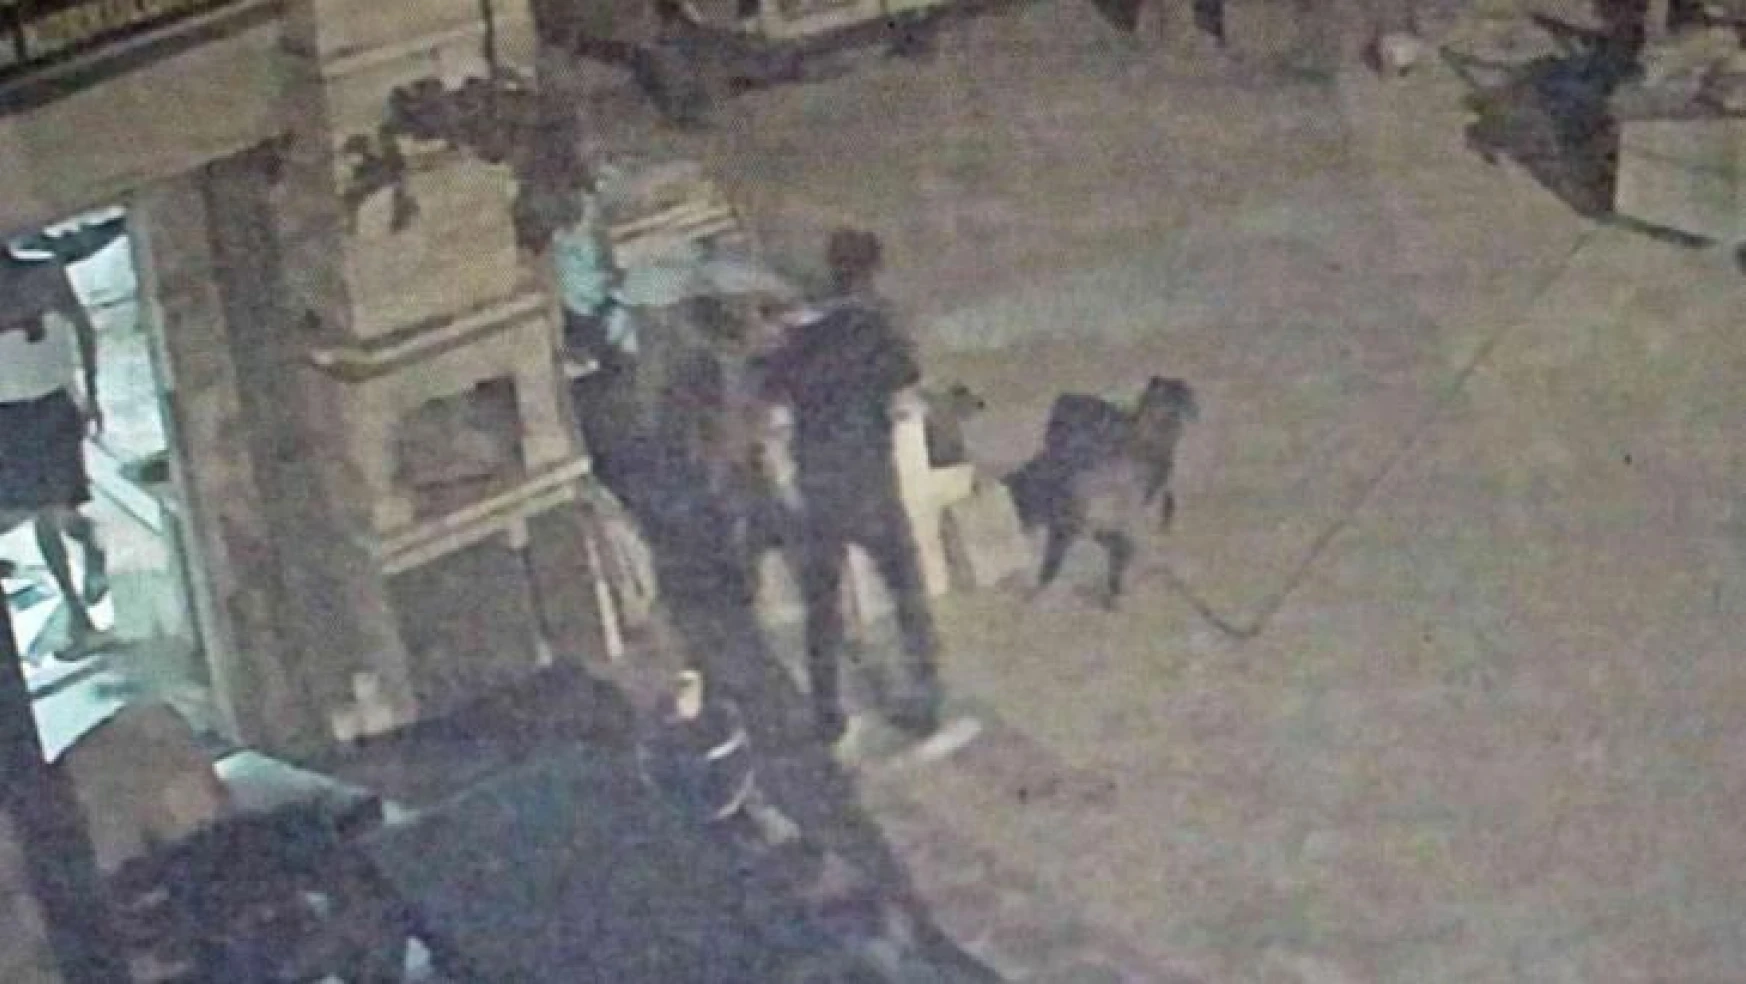 Antalya'da akıl almaz olay, tartıştığı arkadaşına sinirlenip aynı ismi taşıyan köpeği vurdu